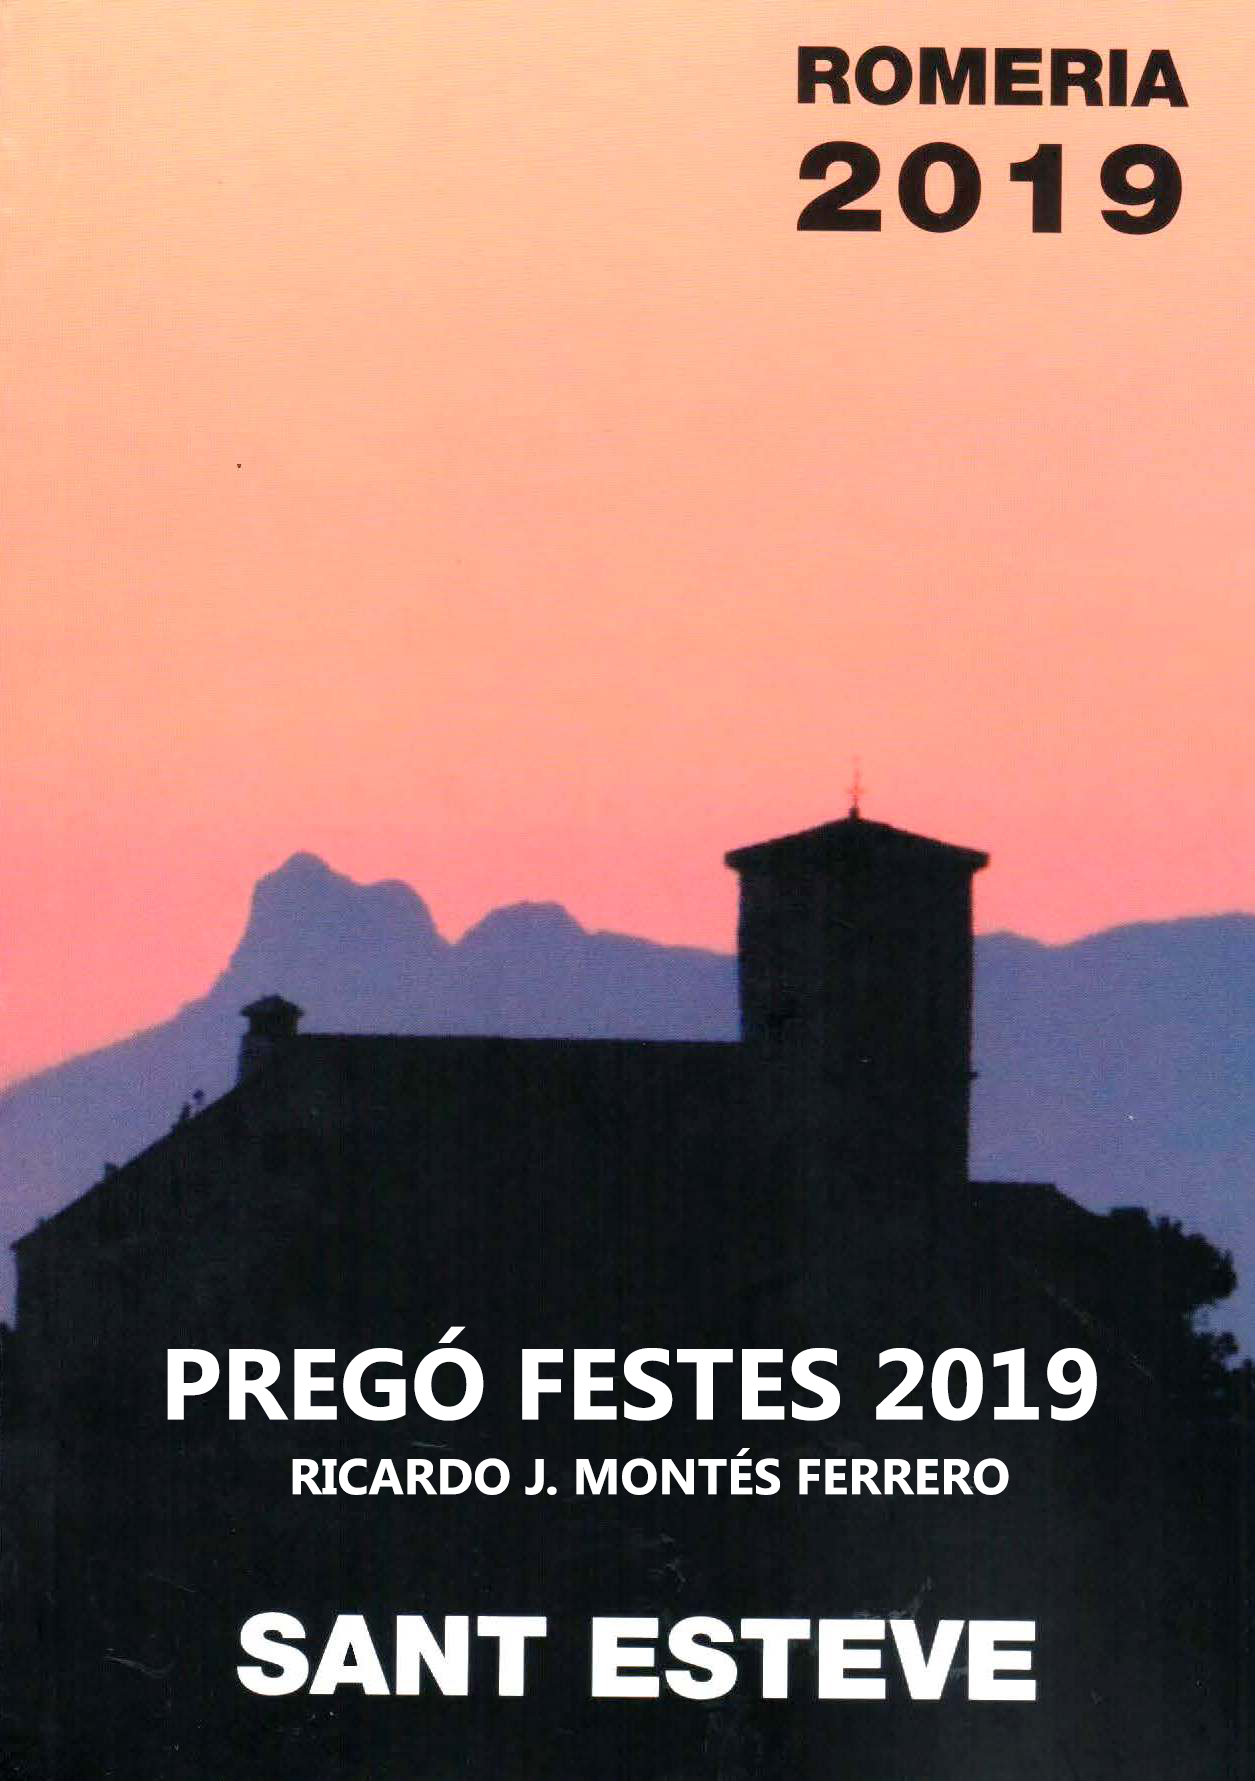 Pregó Festes Sant Esteve 2019 - Ricardo J. Montés Ferrero